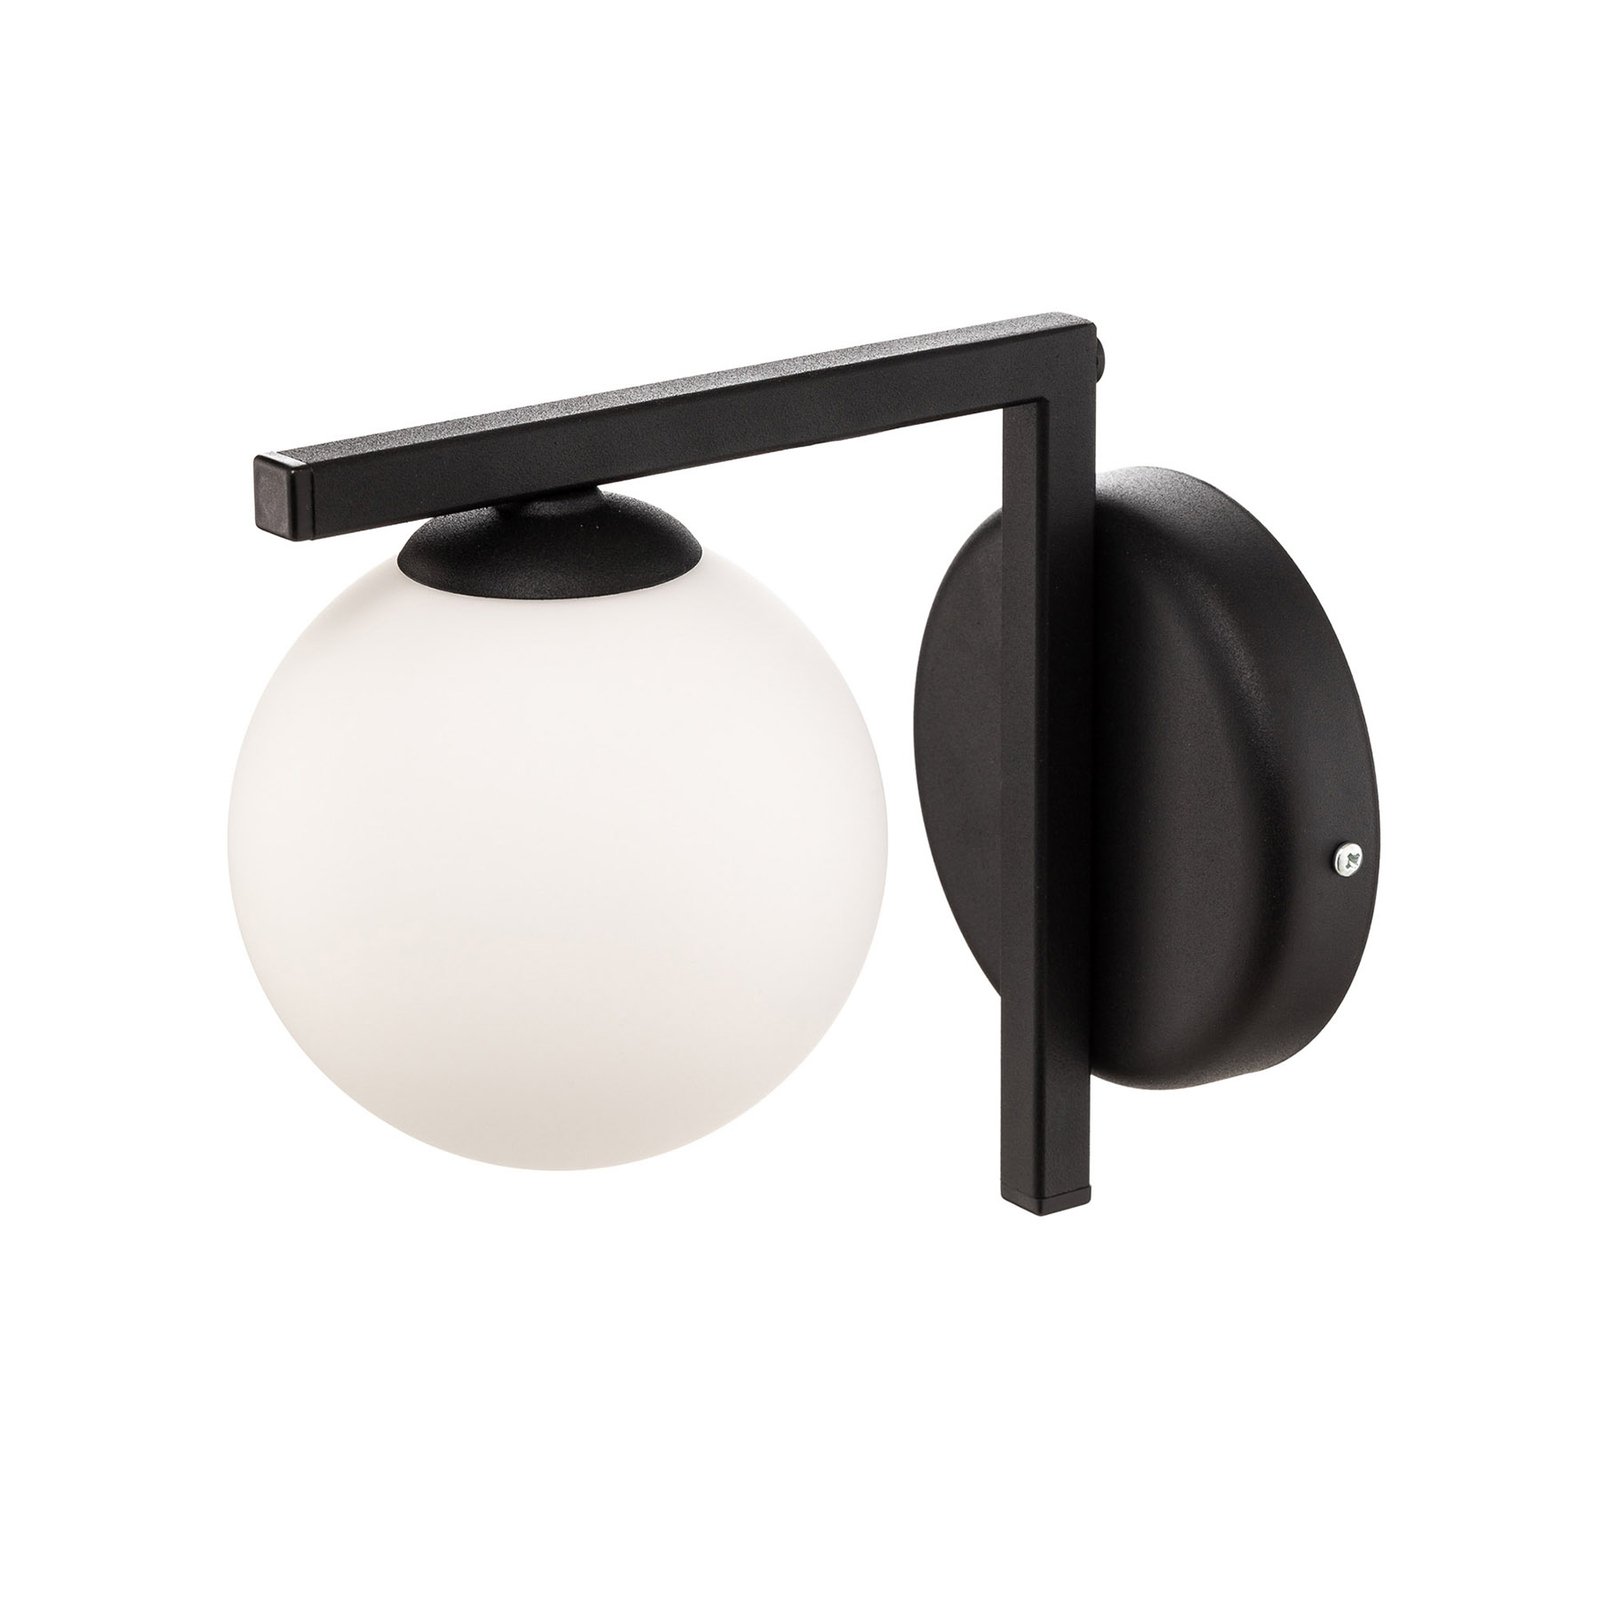 Zac zidna svjetiljka sa sferičnim sjenilom, crna